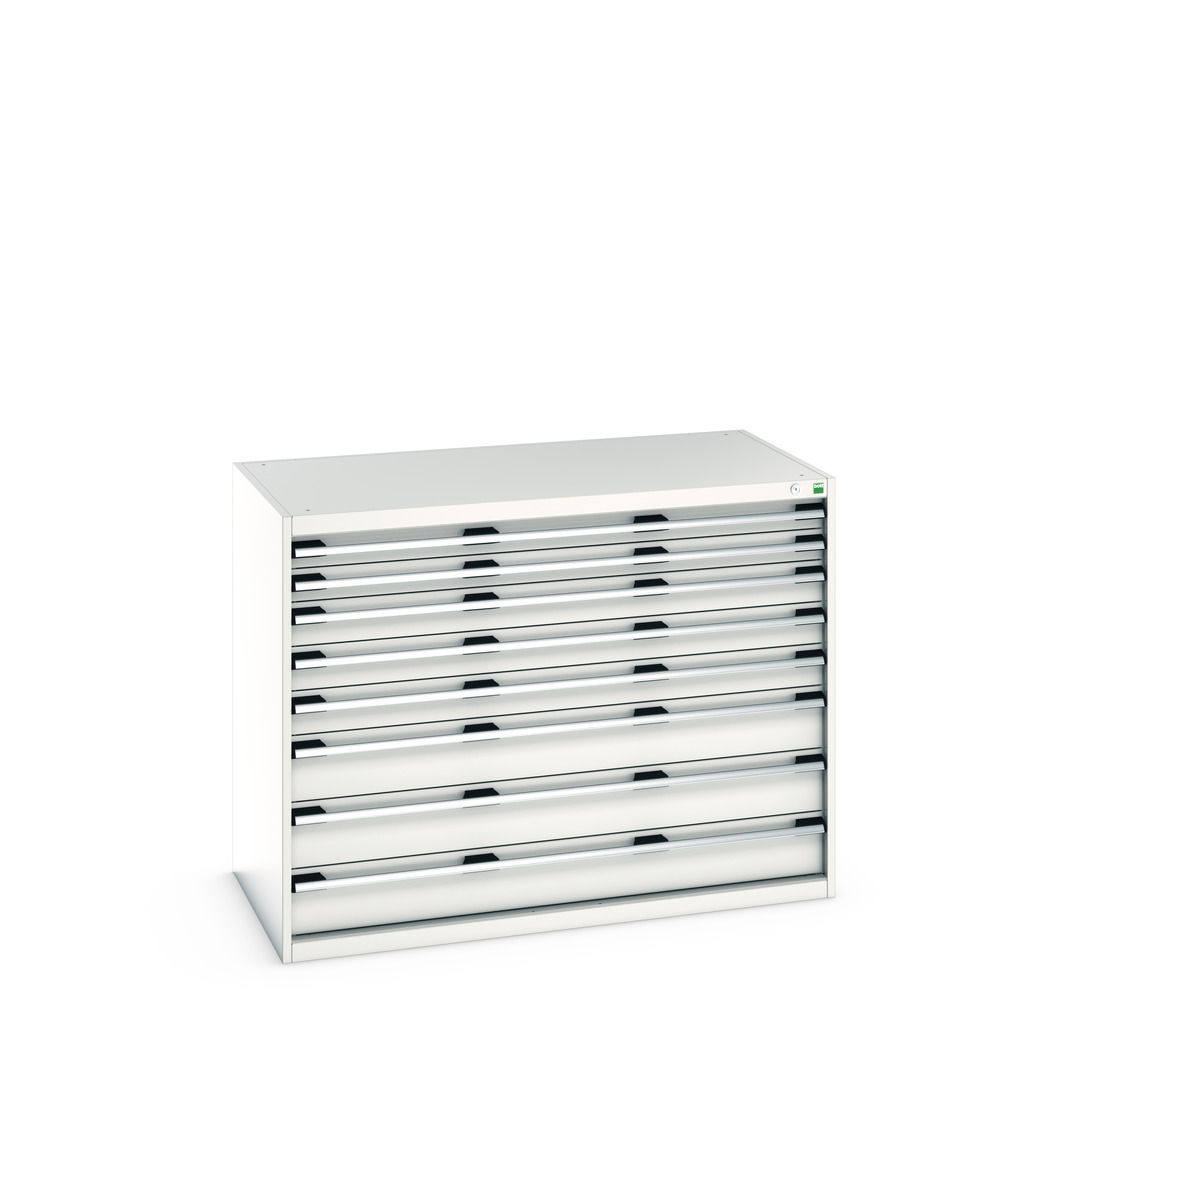 40030020.16V - cubio drawer cabinet